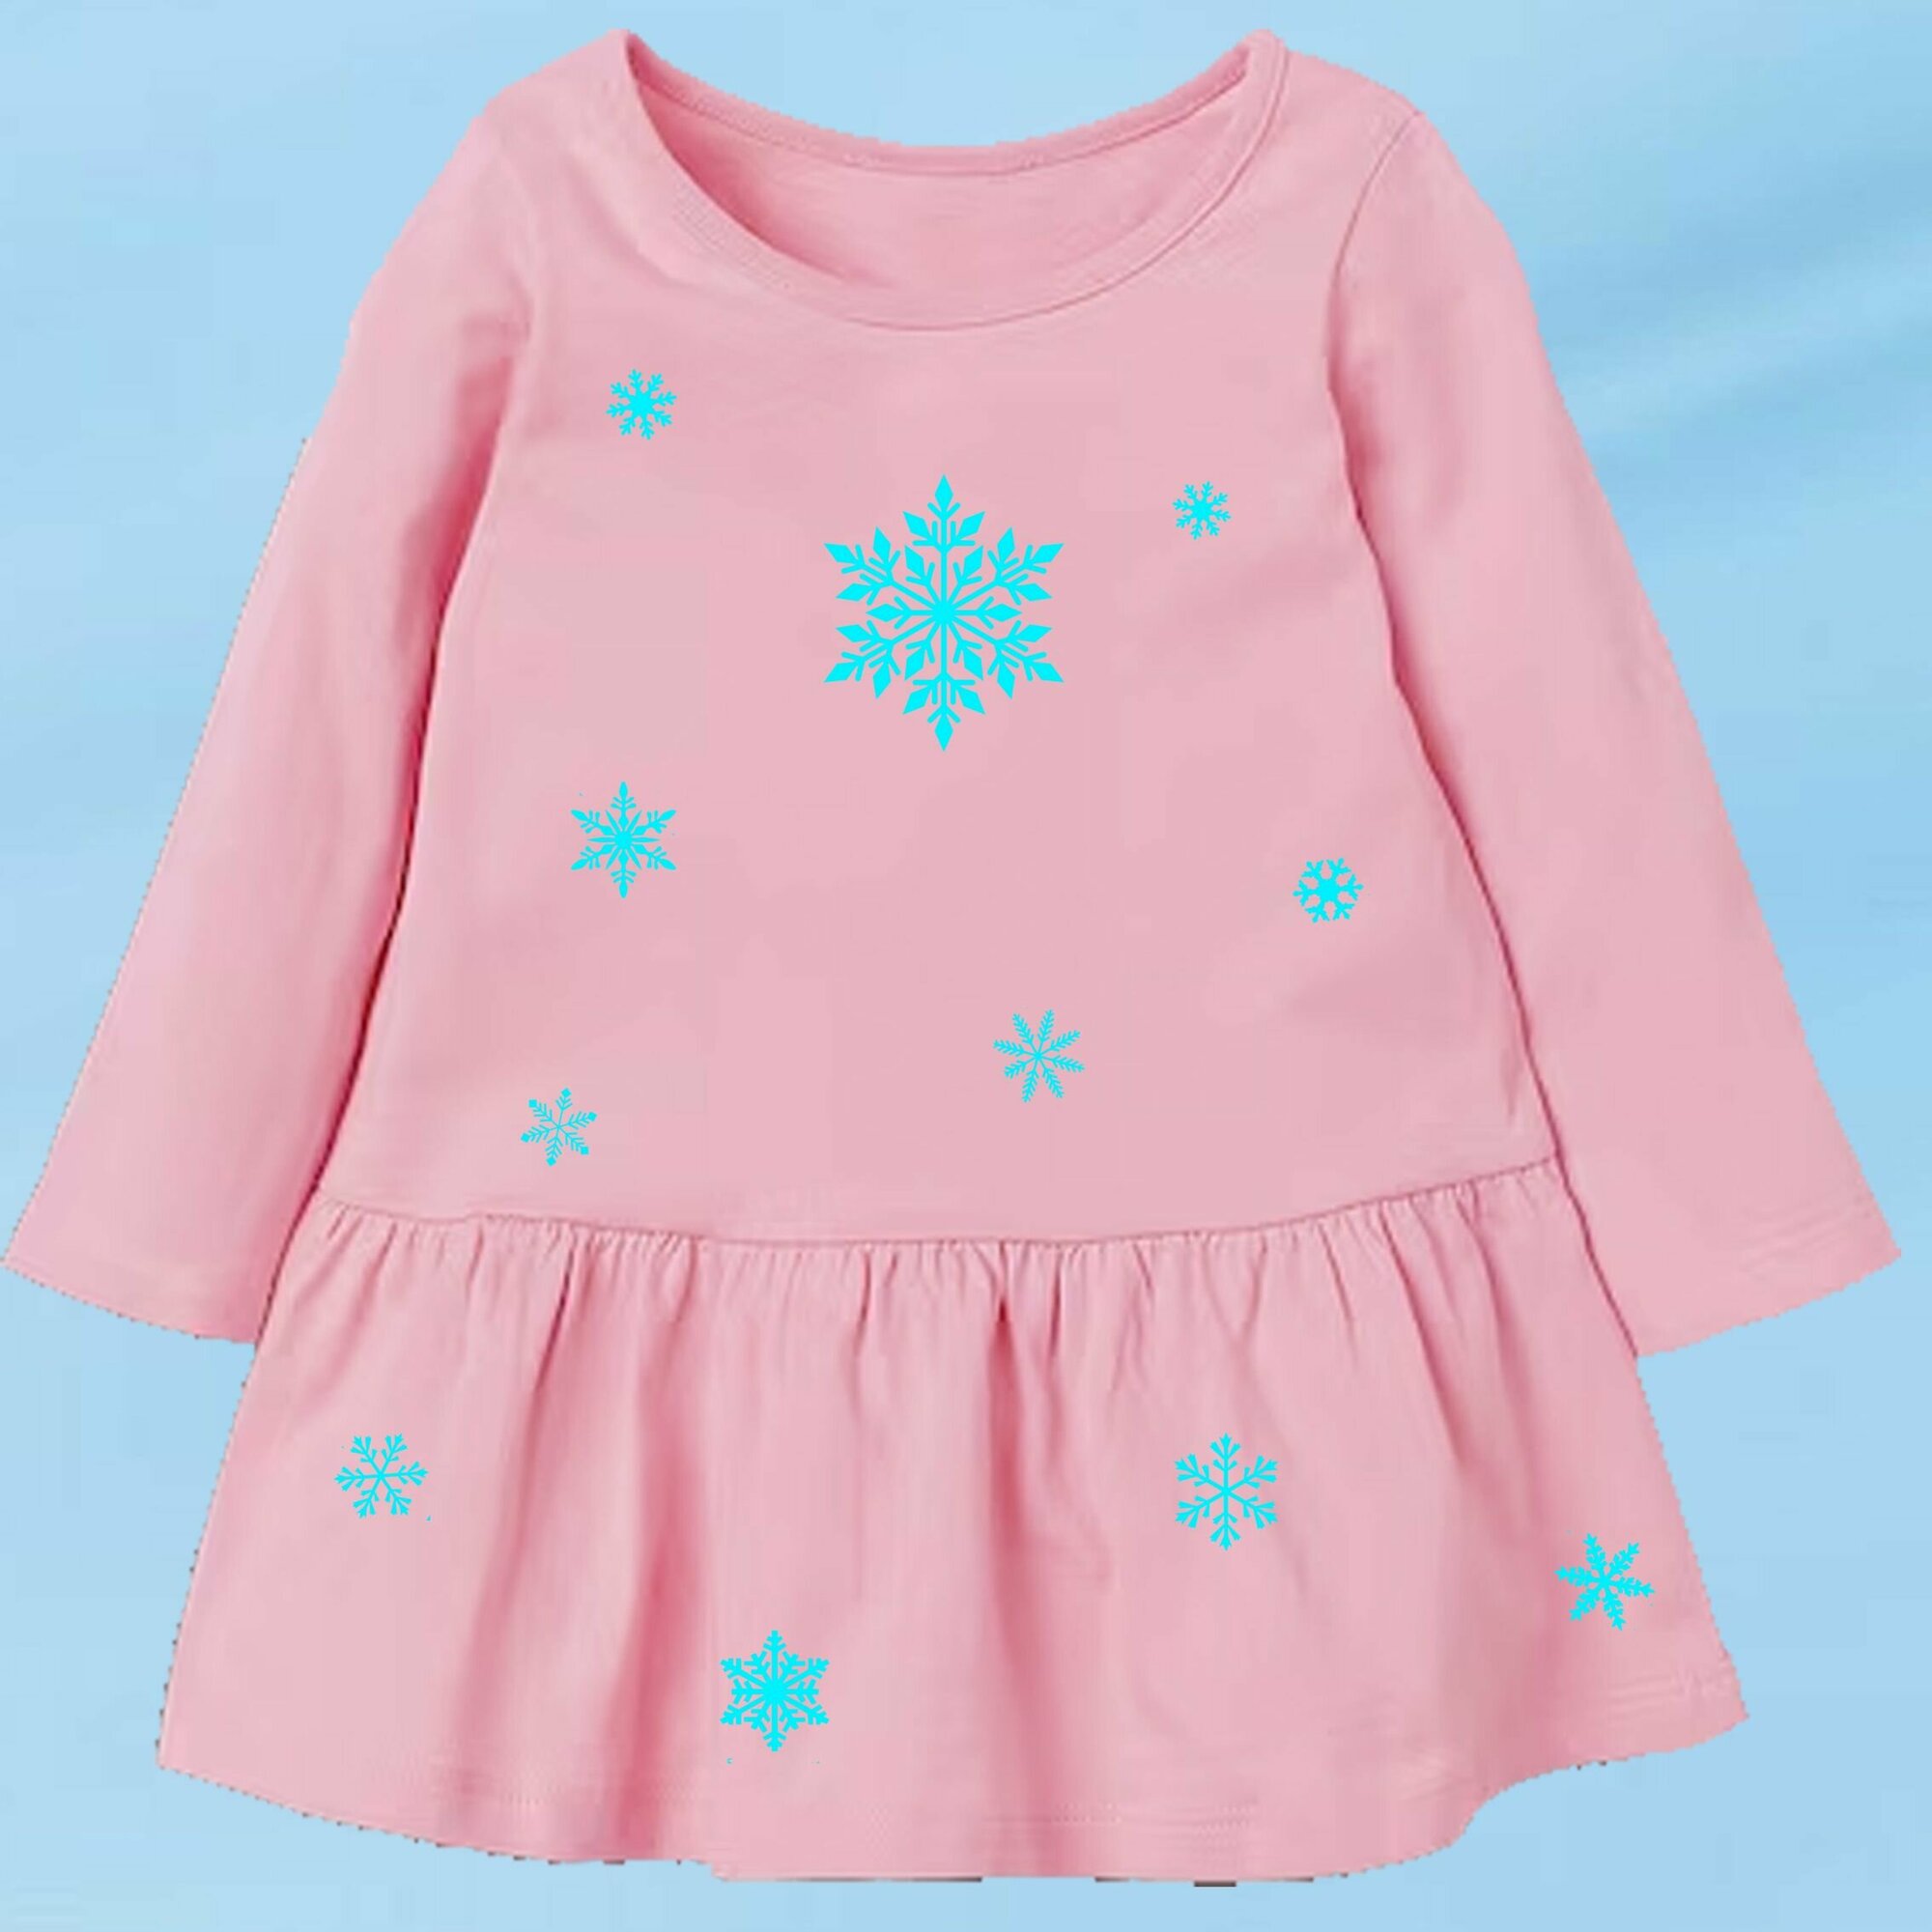 Термонаклейки для одежды новогодние "Снежинки", набор, 20х14 см, голубой